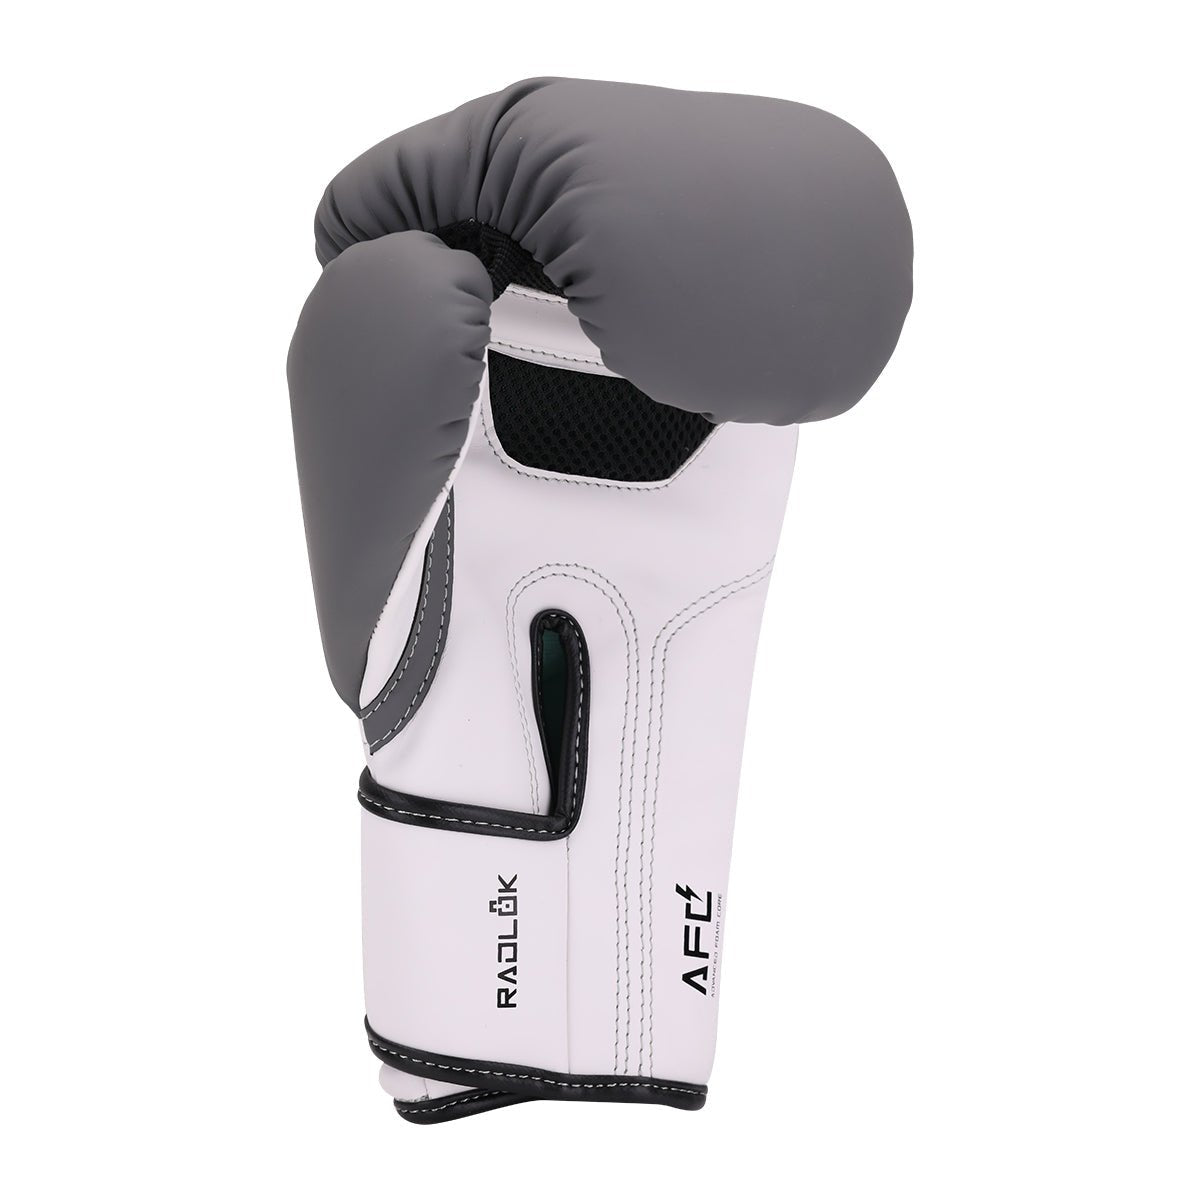 Brave Women's Boxing Gloves - White/Teal